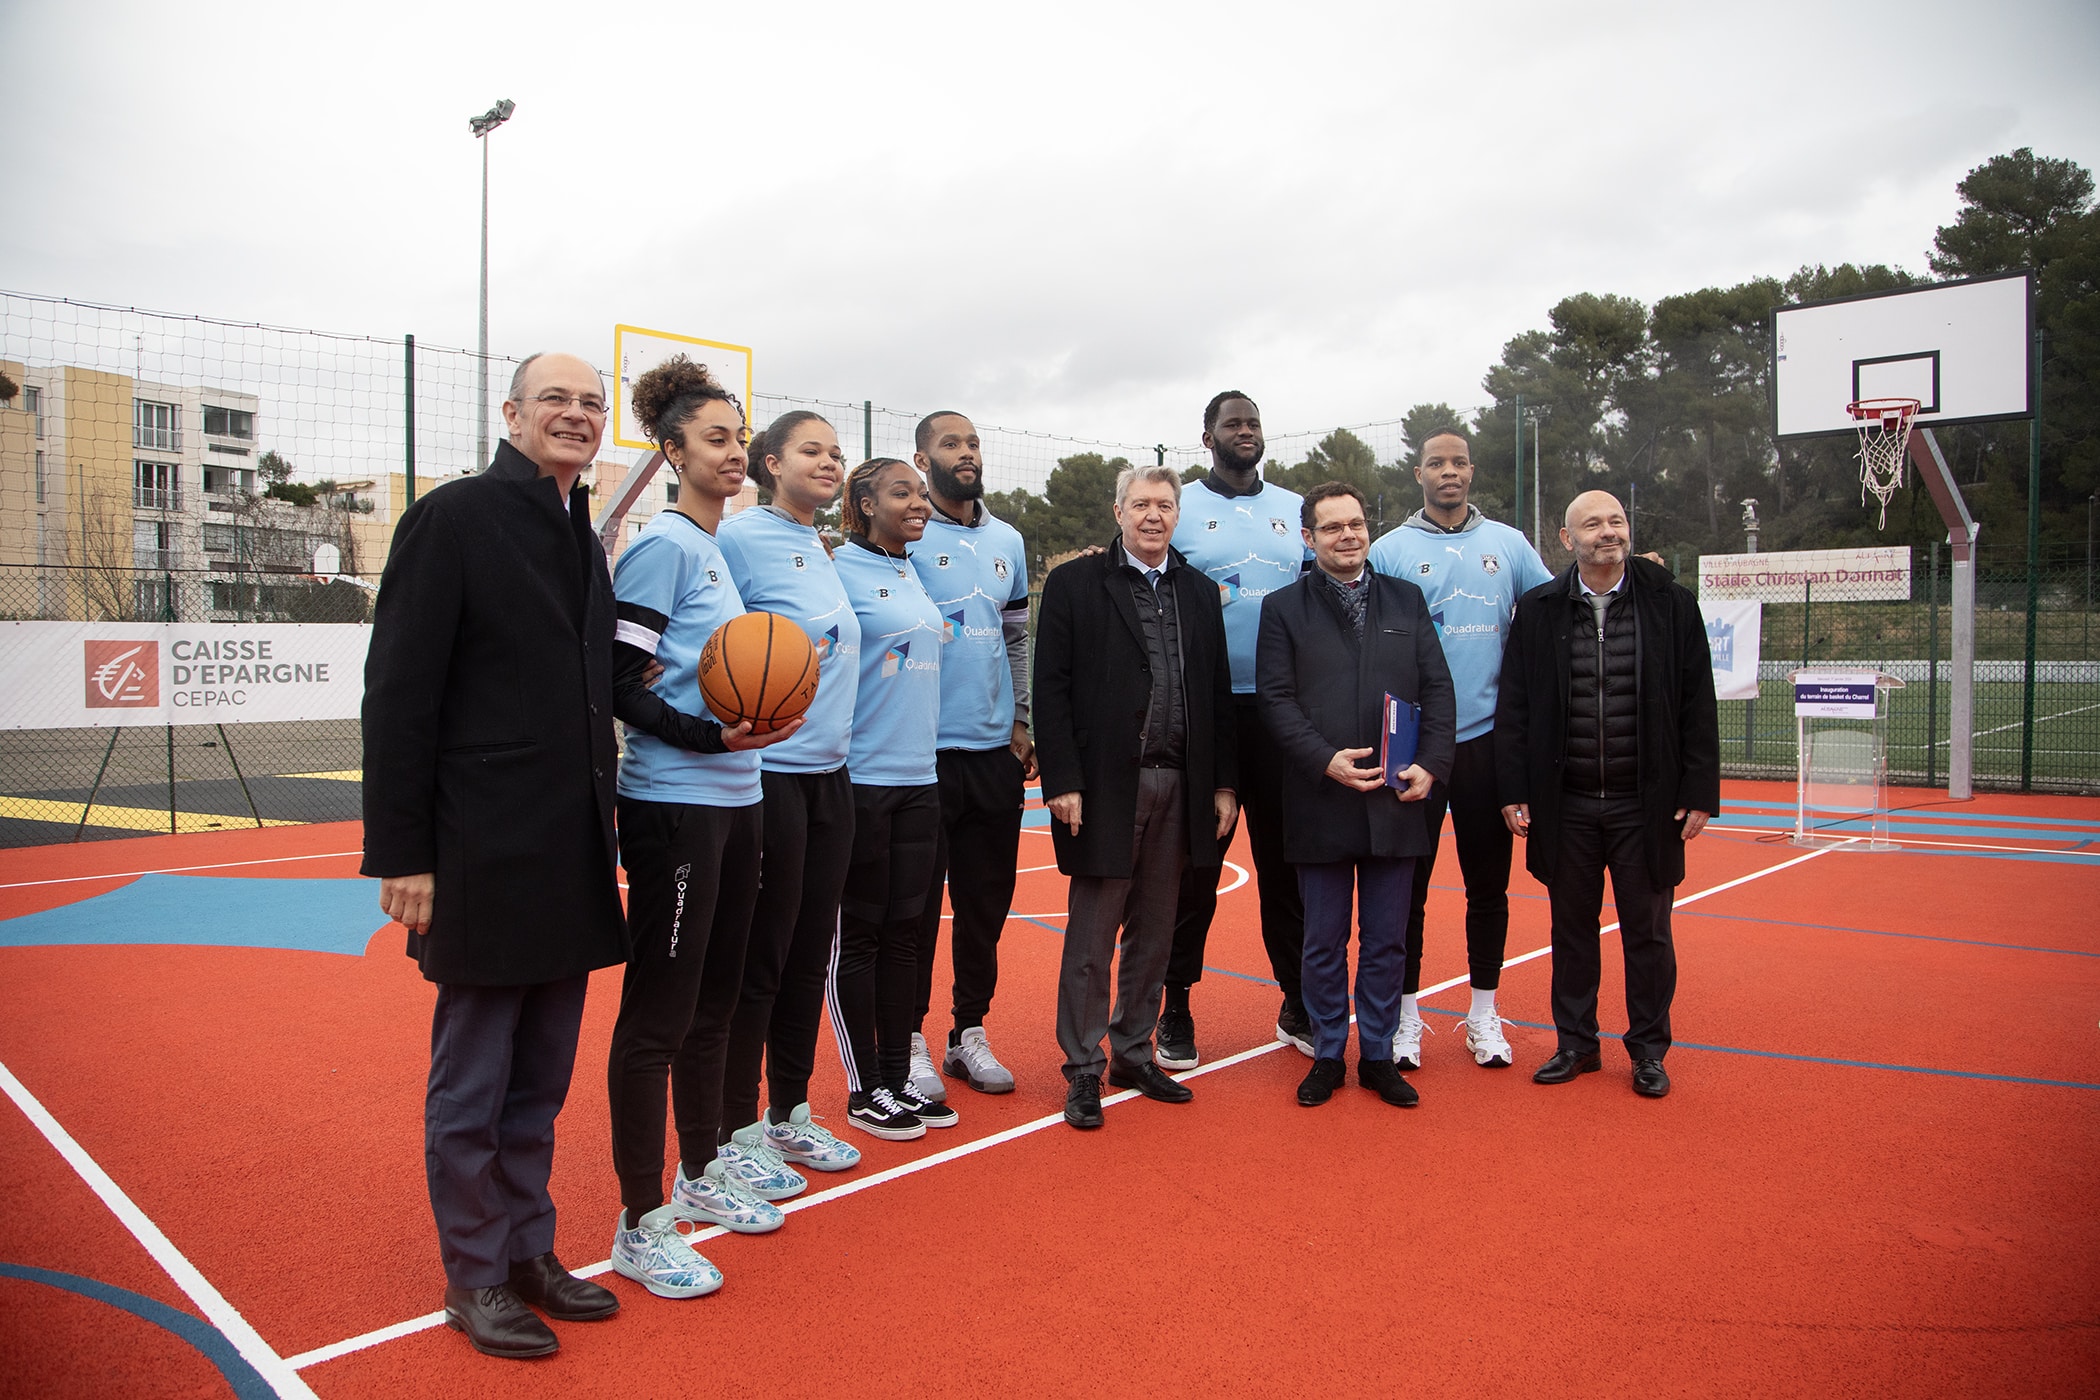 cepac aubagne, Vidéo | La Caisse d&rsquo;Epargne CEPAC inaugure un terrain de basket à Aubagne, Made in Marseille